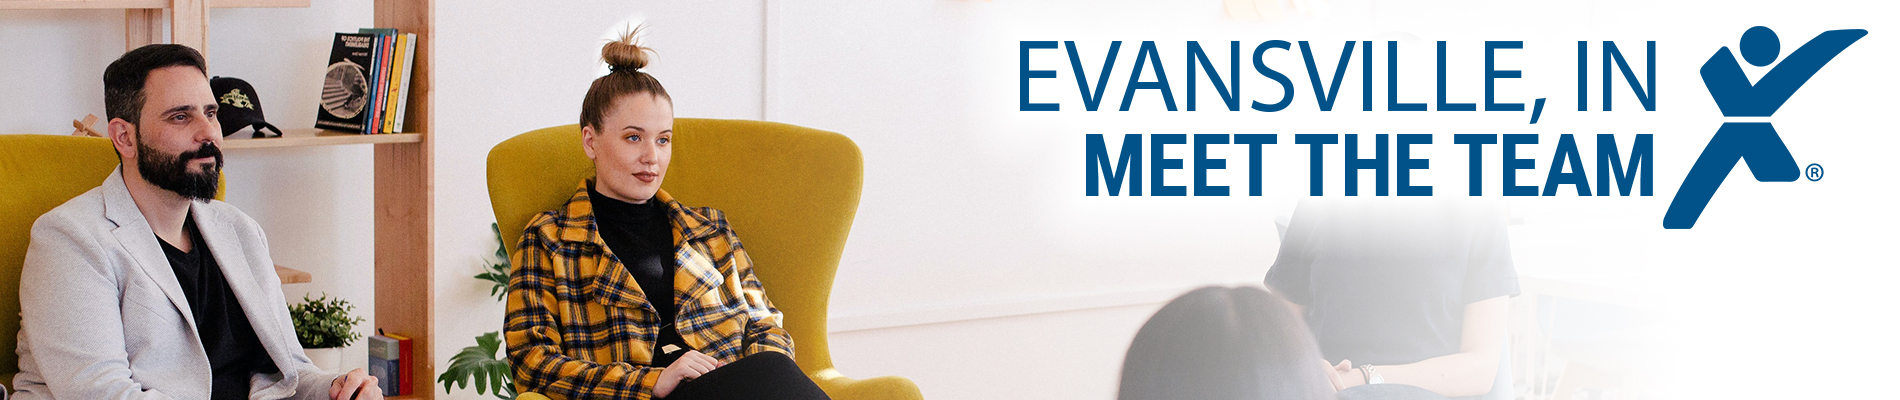 Meet the Express Team - Evansville Employment Recruiters